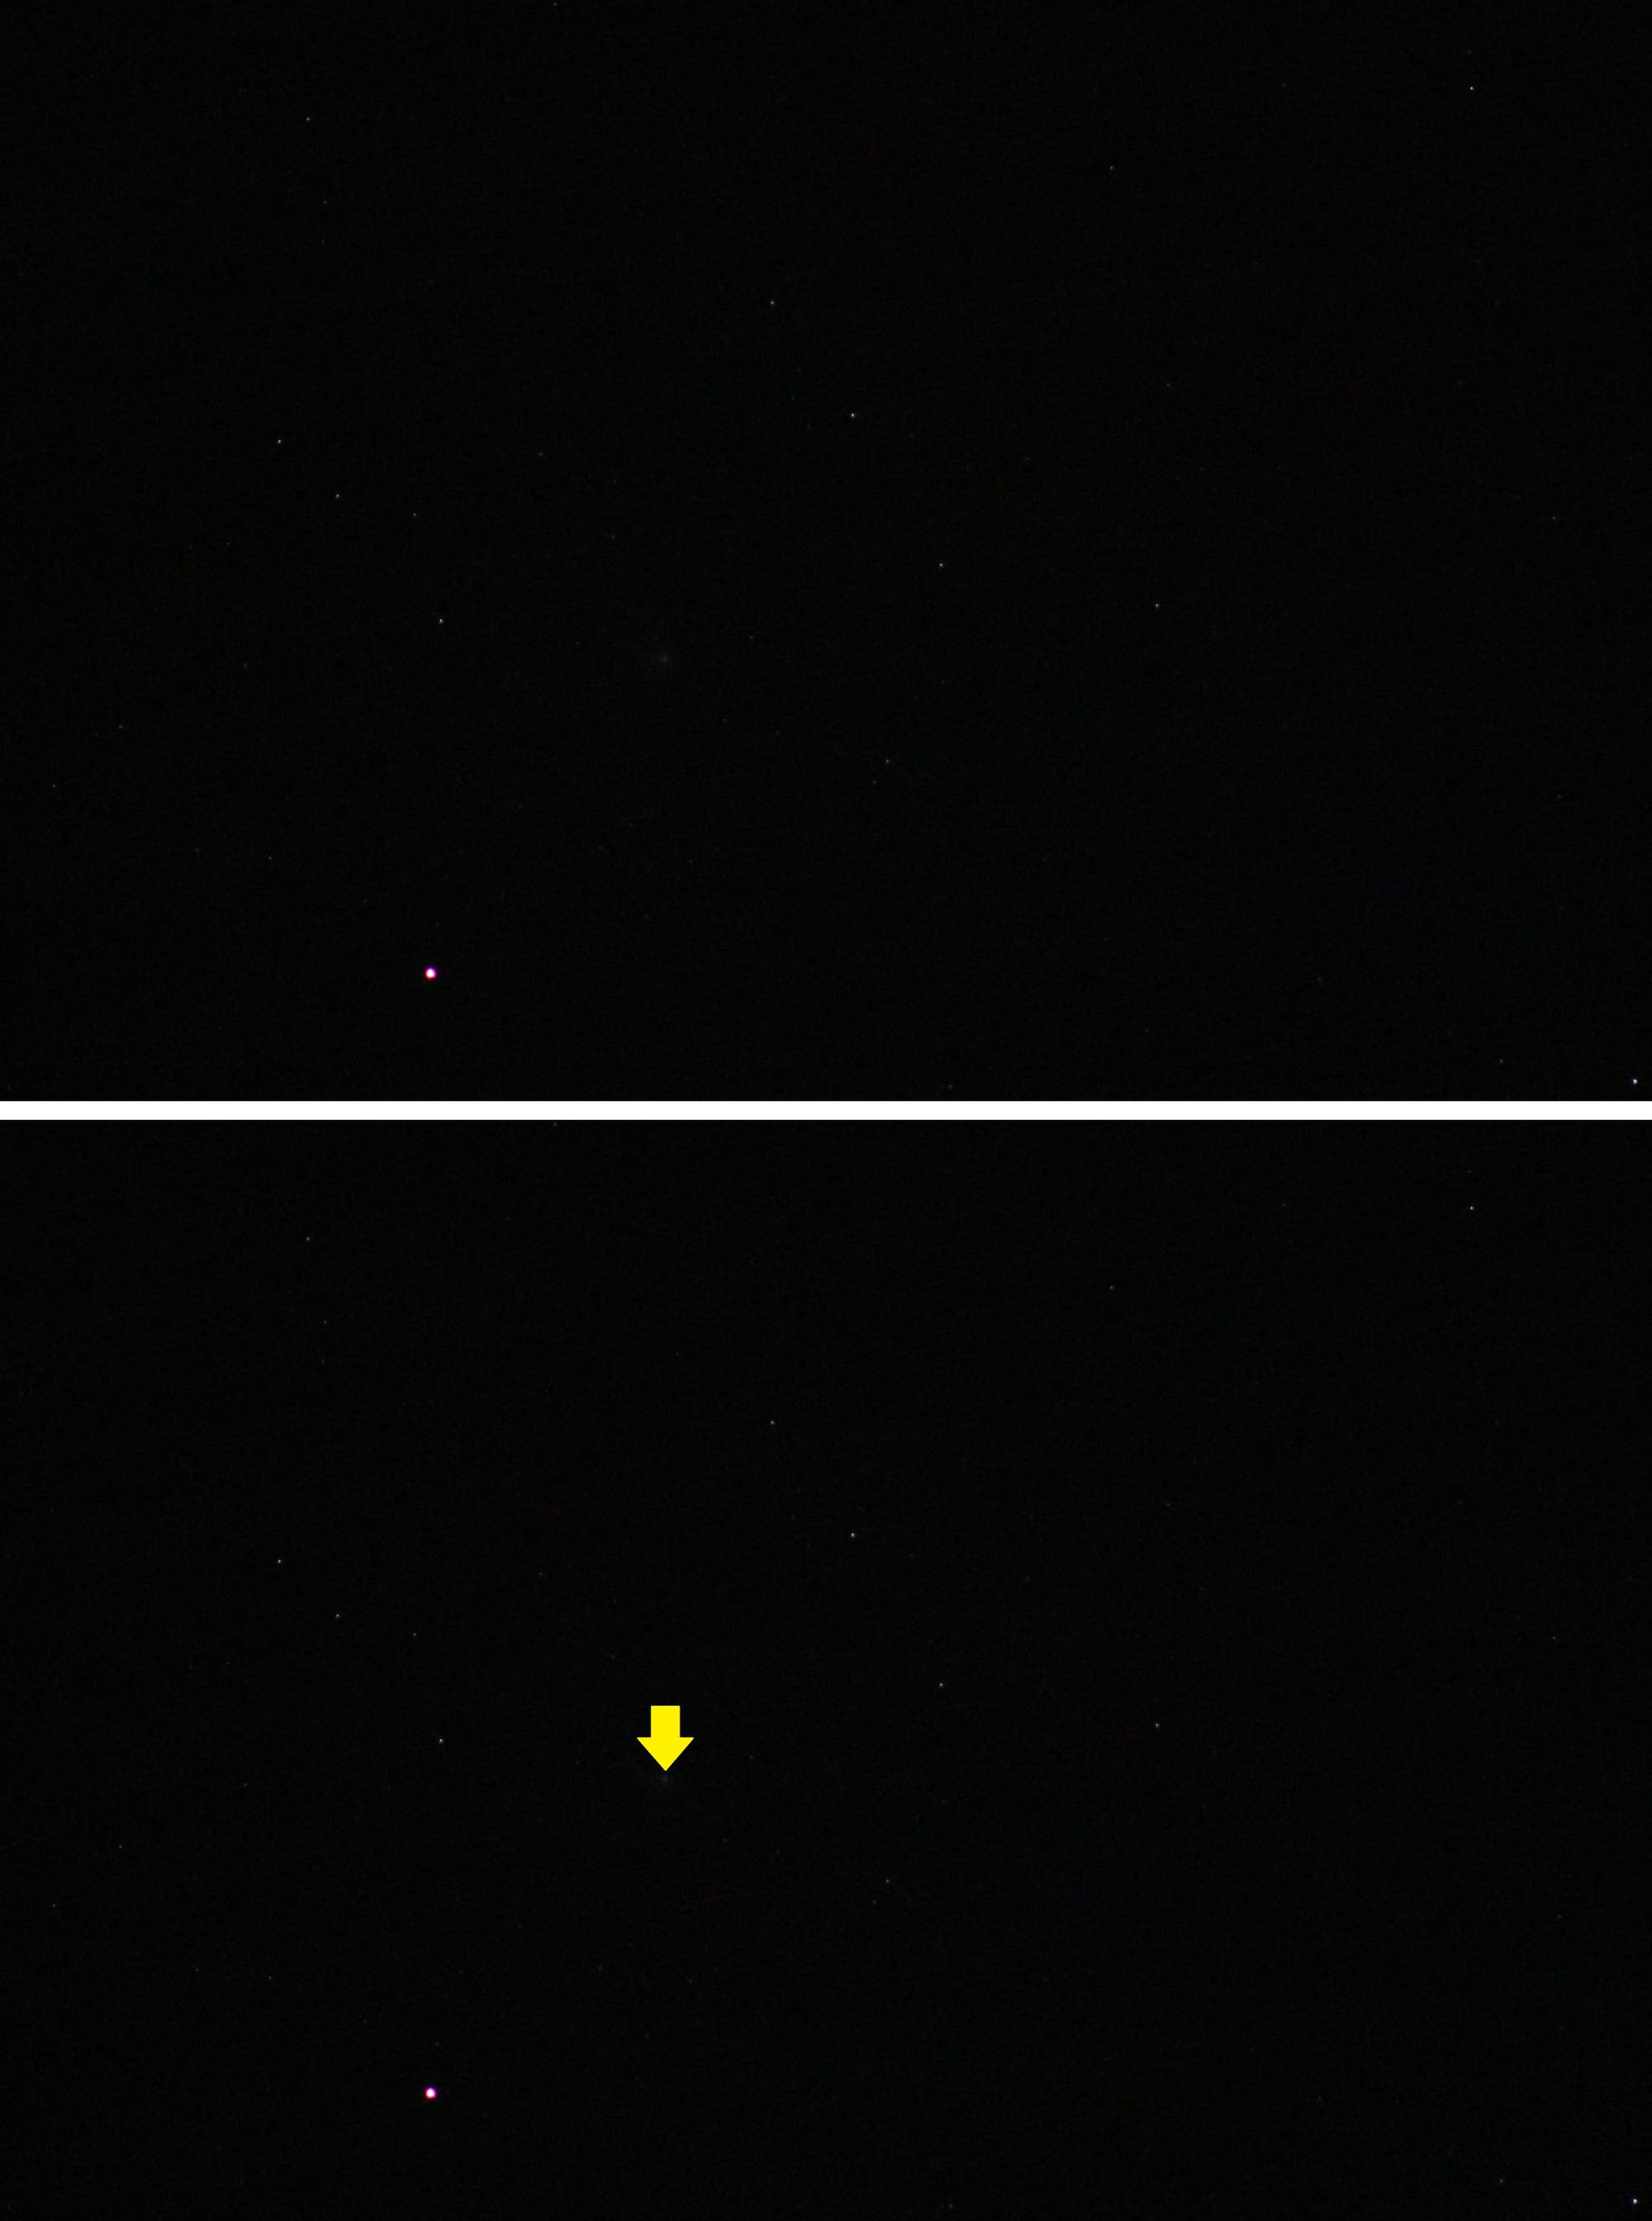 Komet C/2022 E3 (ZTF) im Sternbild Fuhrmann - Aufnahme mit langer Brennweite